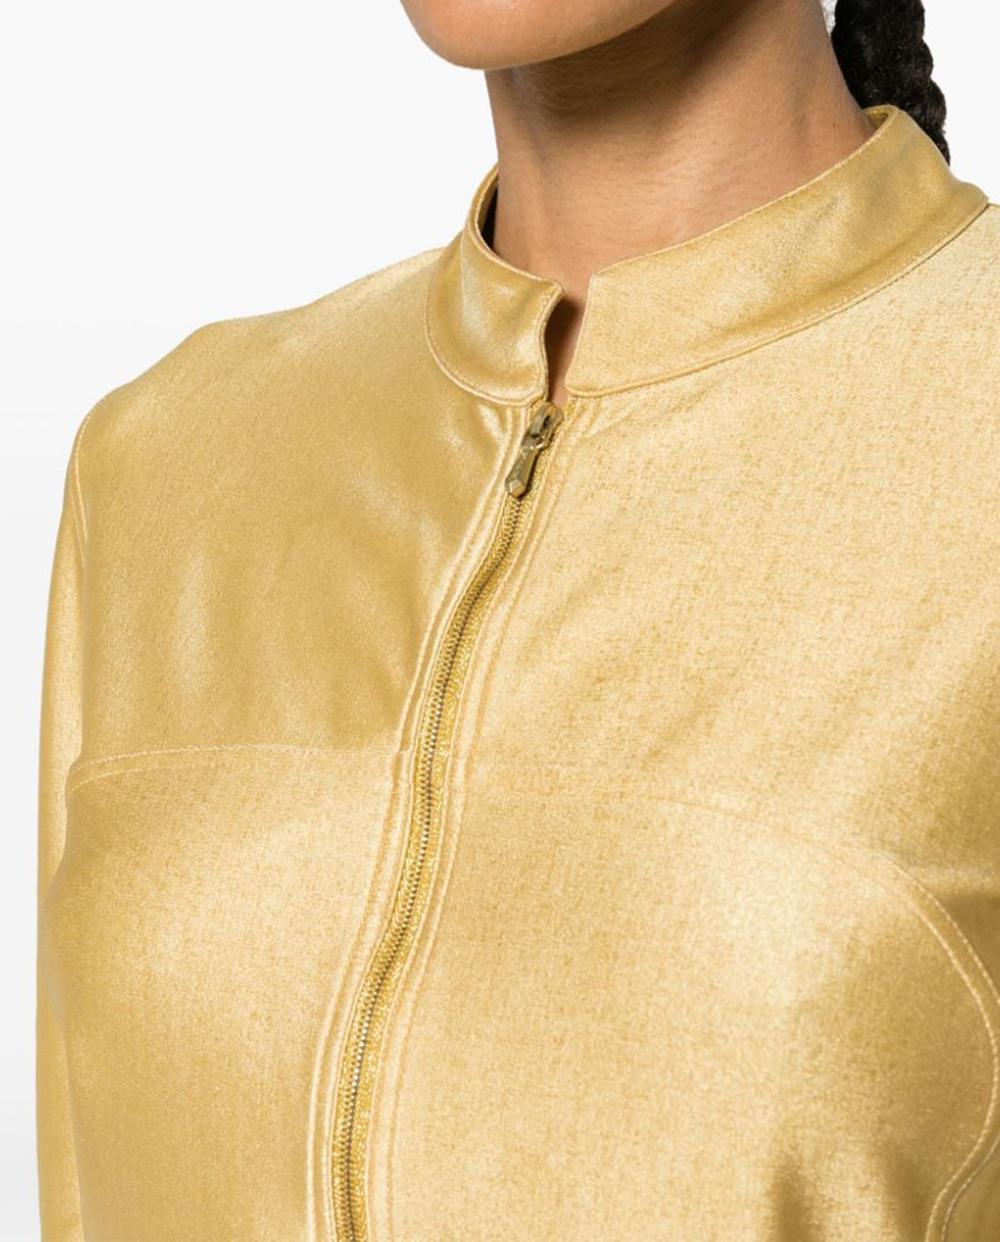 200&, Chanel veste cropped non doublée en métal doré avec une longueur cropped, un tissu en jersey doré extensible,  une finition métallique, un faux col, une fermeture éclair sur le devant, des manches longues.
Composition : Nylon 80%,